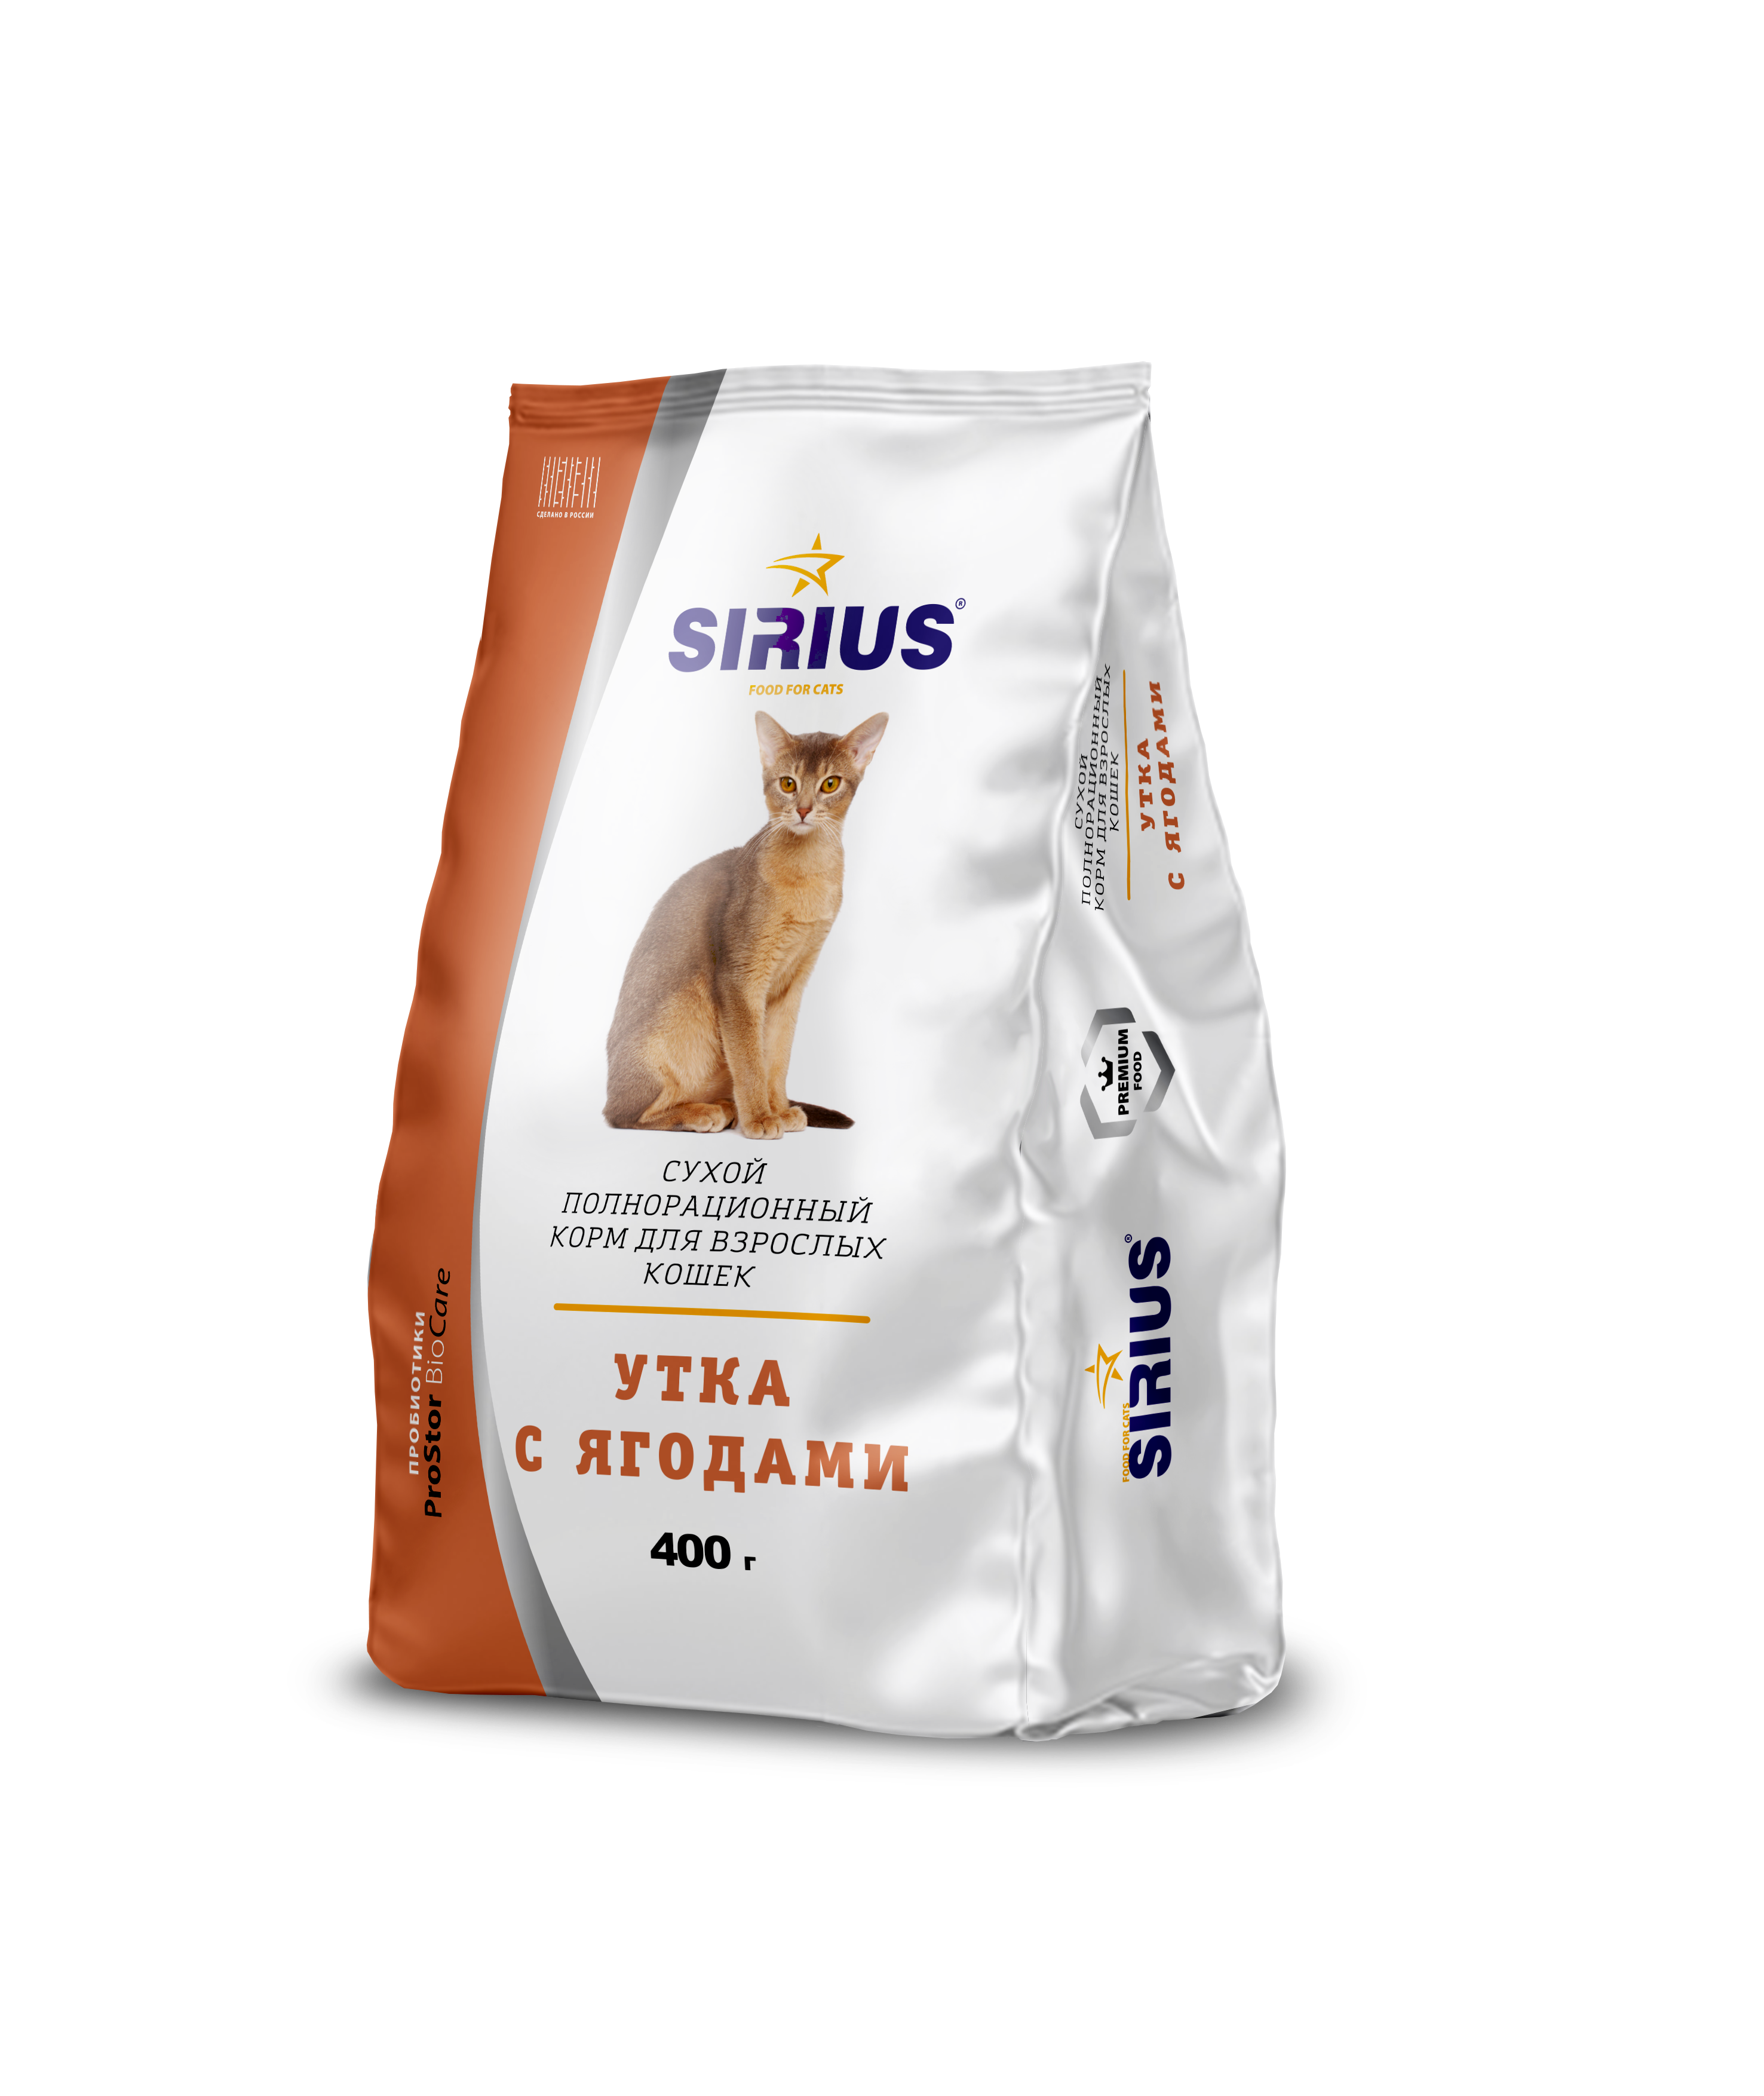 Купить сириус для кошек 10. Сириус корм для кошек. Sirius корм для стерилизованных кошек. Сириус сух.д/кошек 1,5кг стерилизованных утка/клюква. Сириус корм для кошек 10 кг.